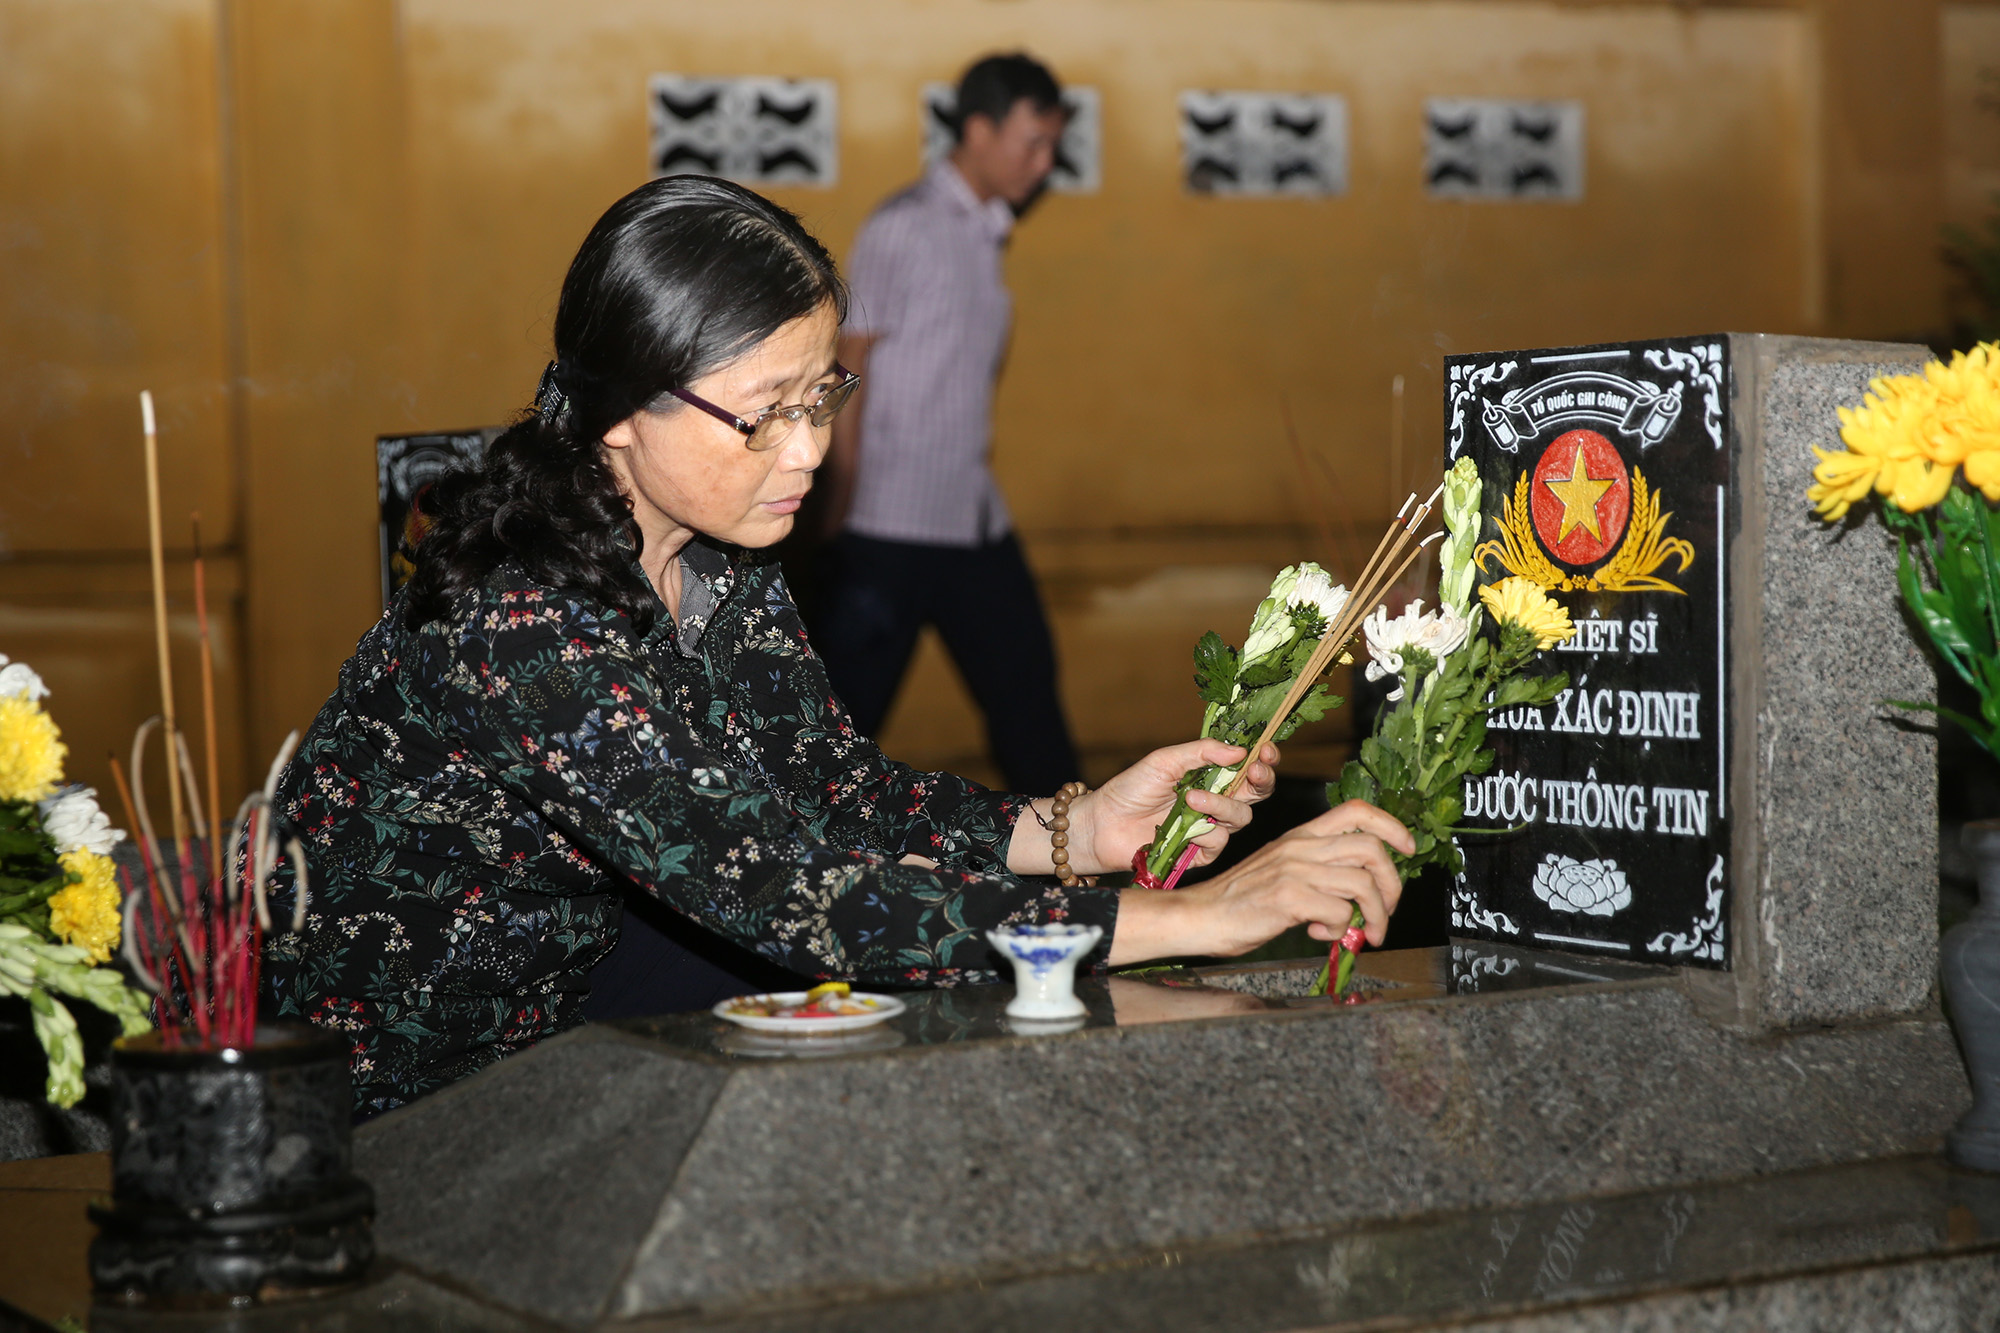 Đồng chí Đỗ Thị Hoàng, Phó Bí thư Thường trực Tỉnh ủy đặt hoa, thắp hương trước mộ liệt sỹ chưa xác định được thông tin.